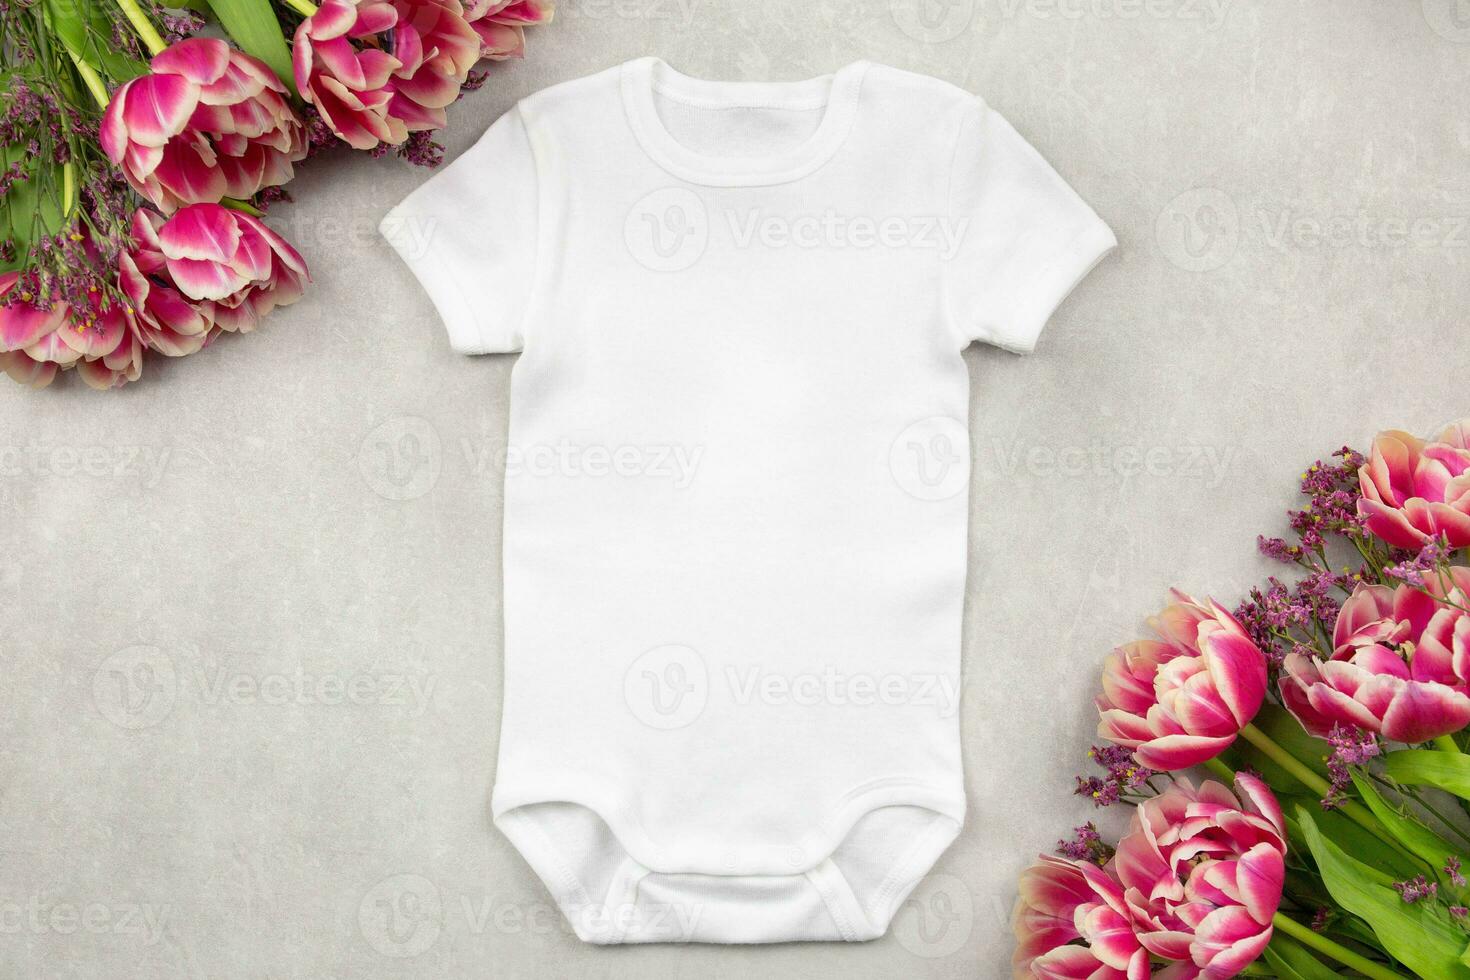 vit bebis flicka eller pojke kroppsdräkt attrapp platt lägga med tulpan blommor på grå betong bakgrund. design onesie mall, skriva ut presentation falsk upp. topp se. foto